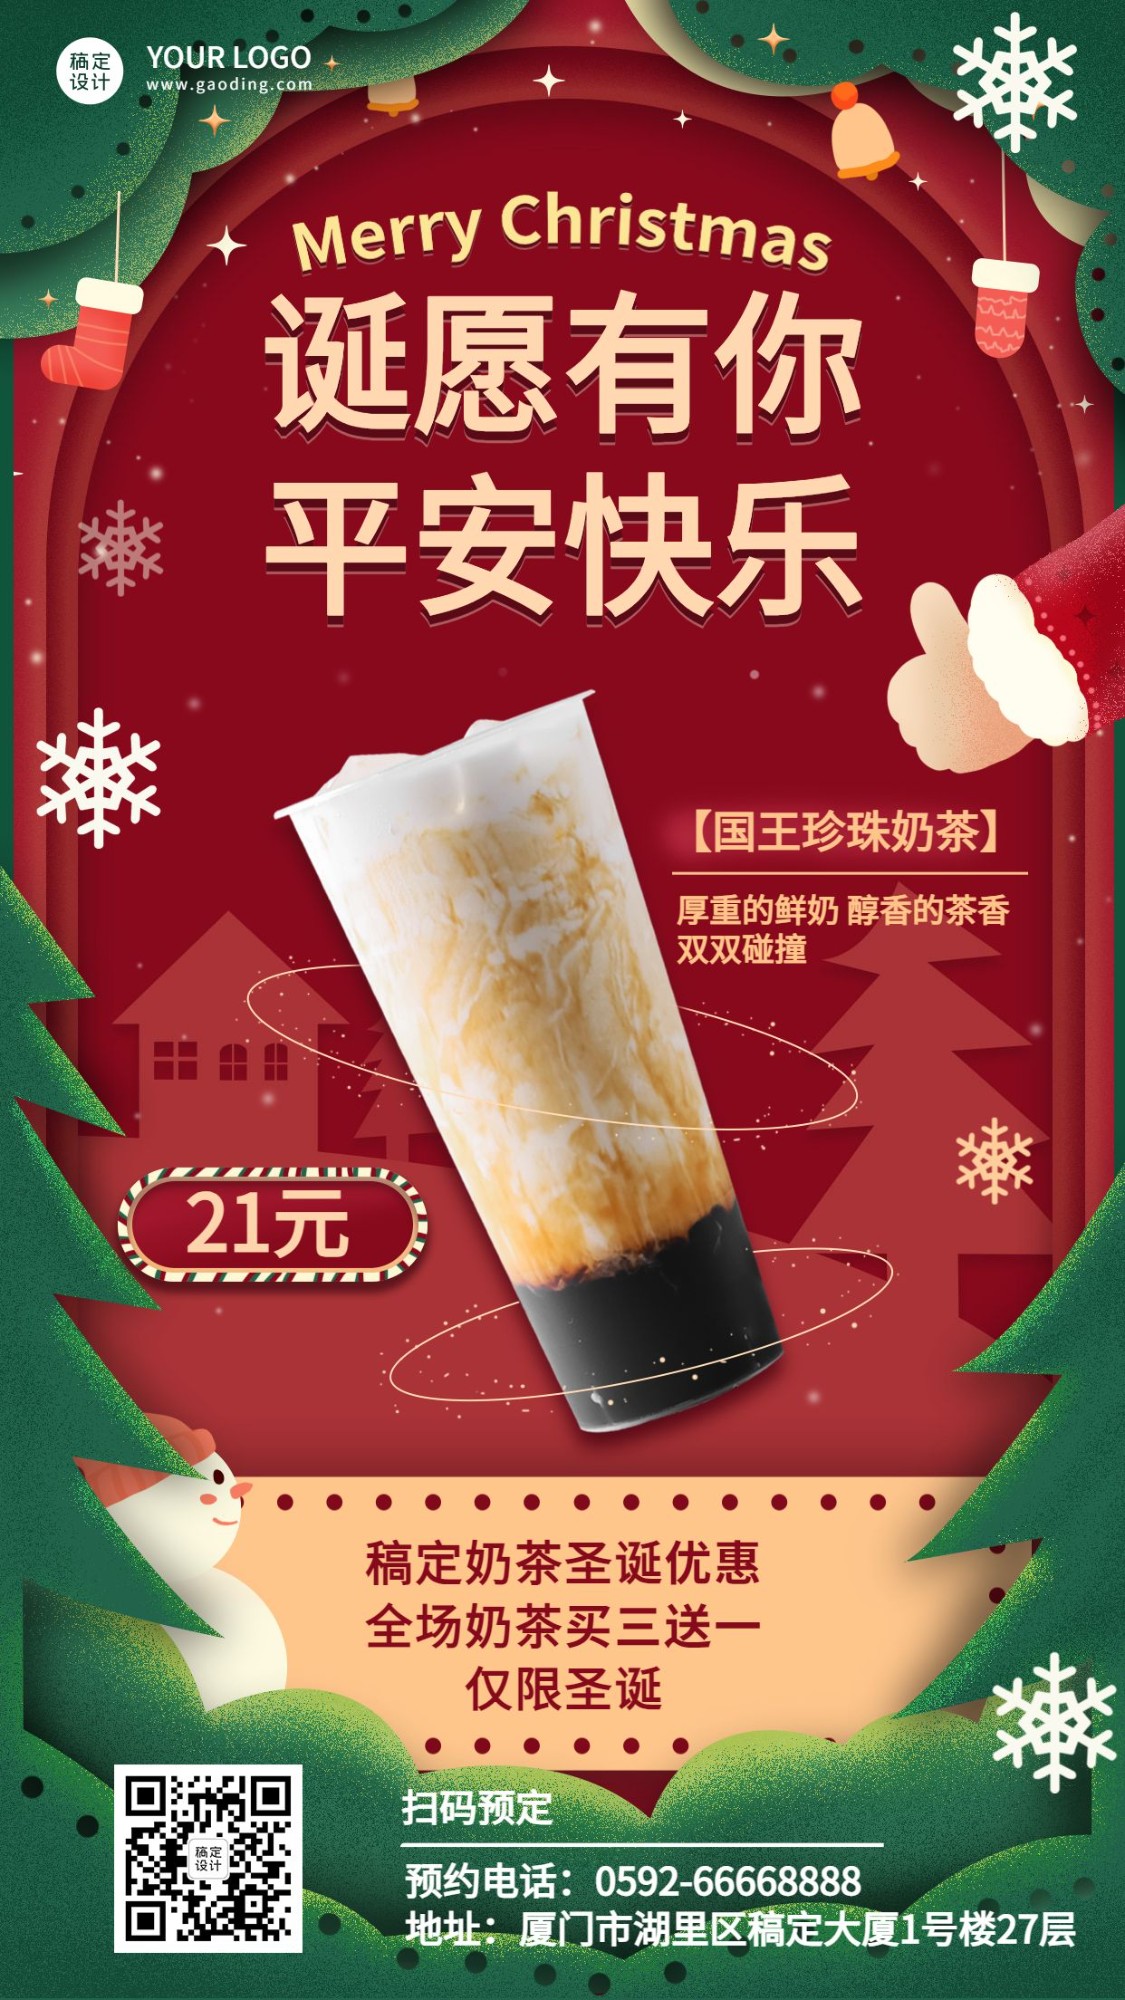 圣诞节奶茶饮品产品营销实景海报